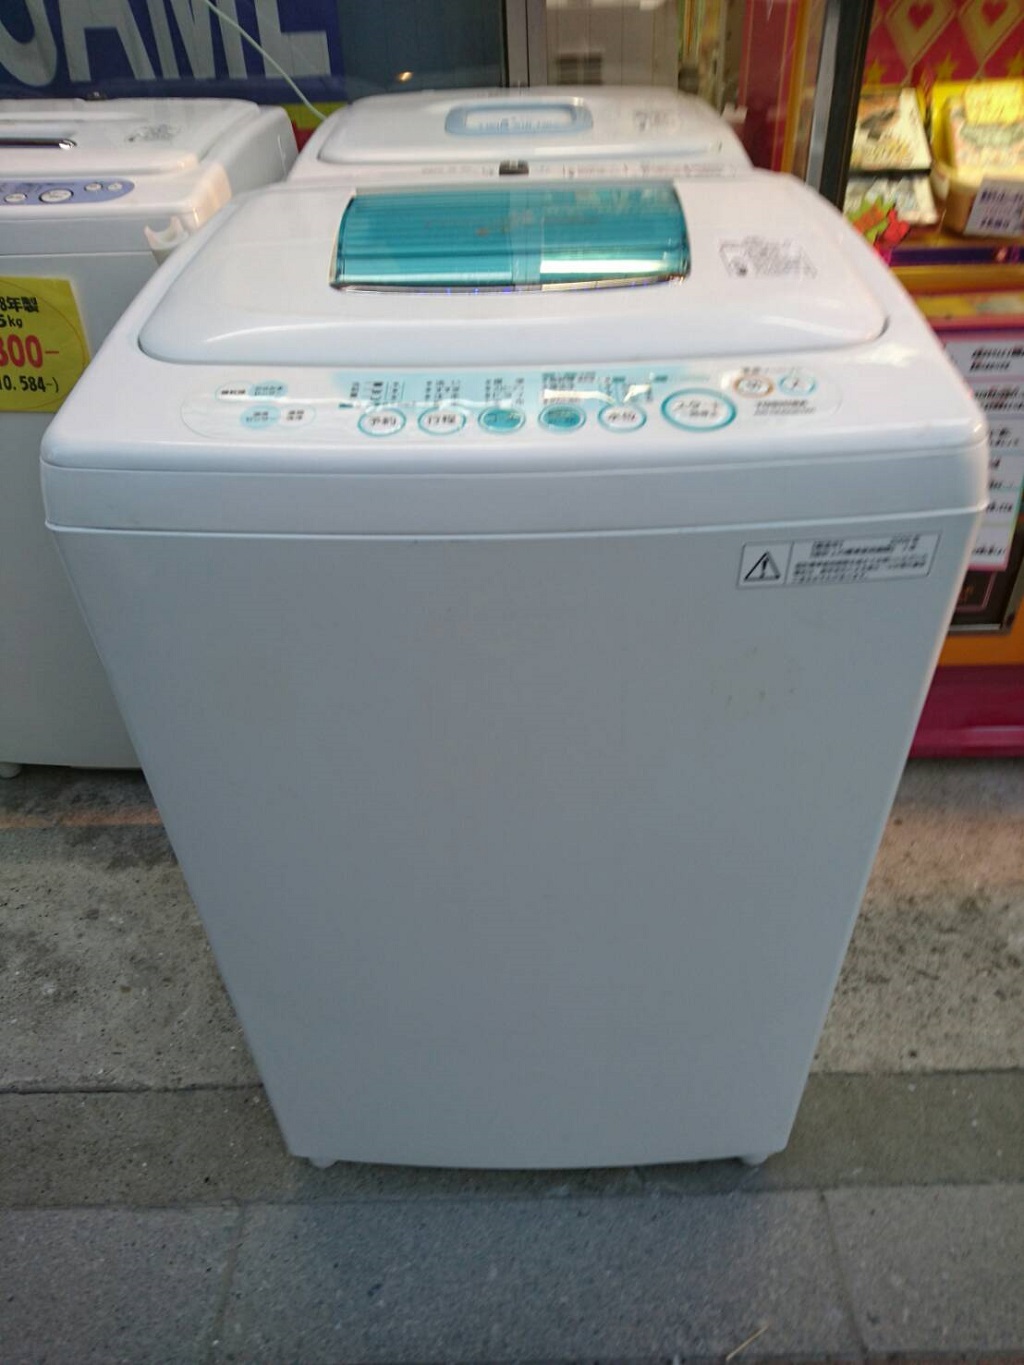 ♪東芝 洗濯機 AW-7G8 7kg ZABOON 2020年製 洗濯槽外し清掃済♪ - 生活家電